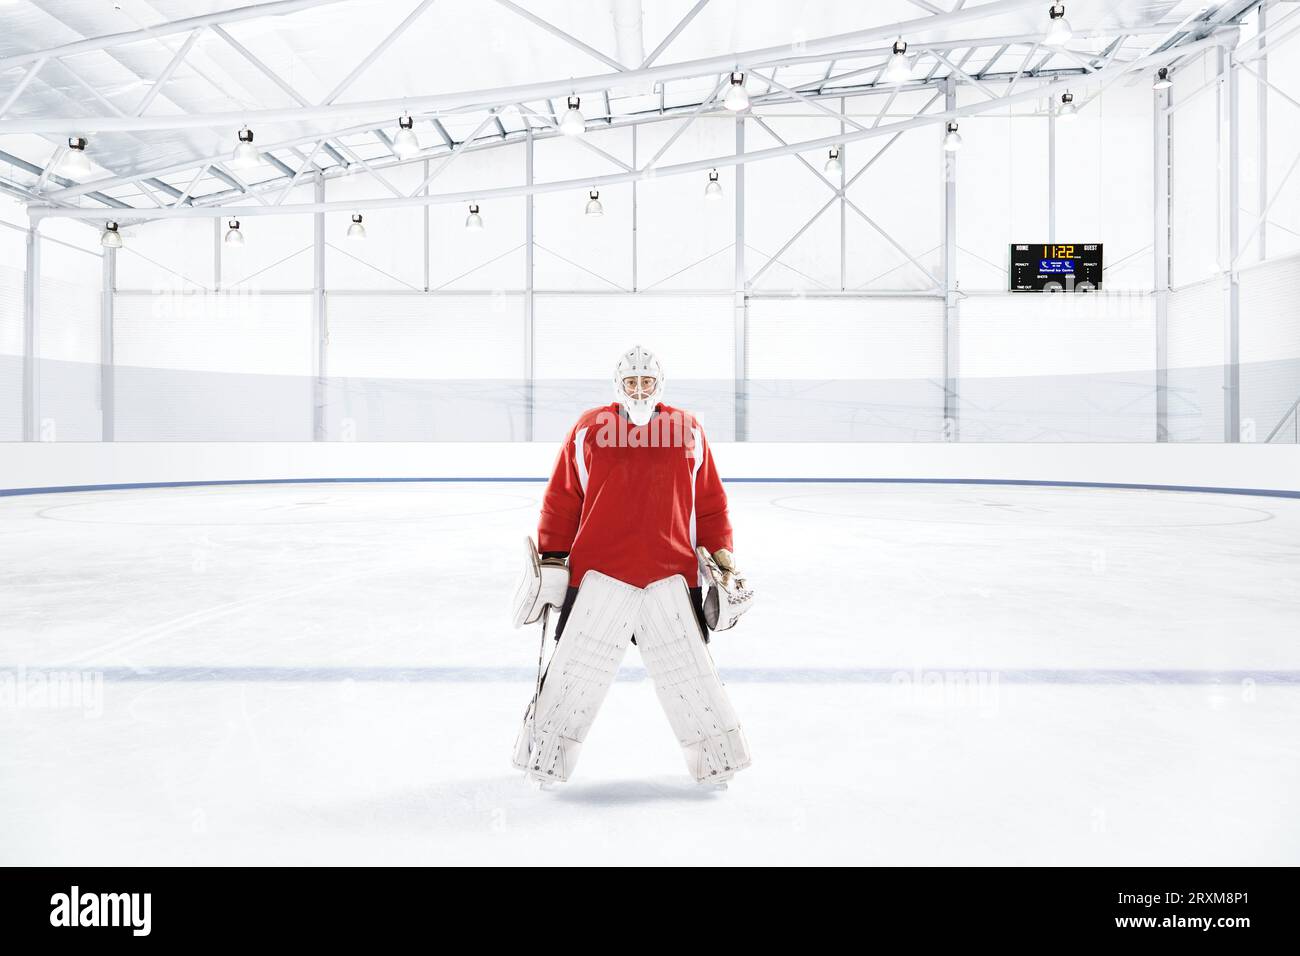 Eishockey Torwart das Tragen der roten Uniform an eine Eisbahn Stockfoto